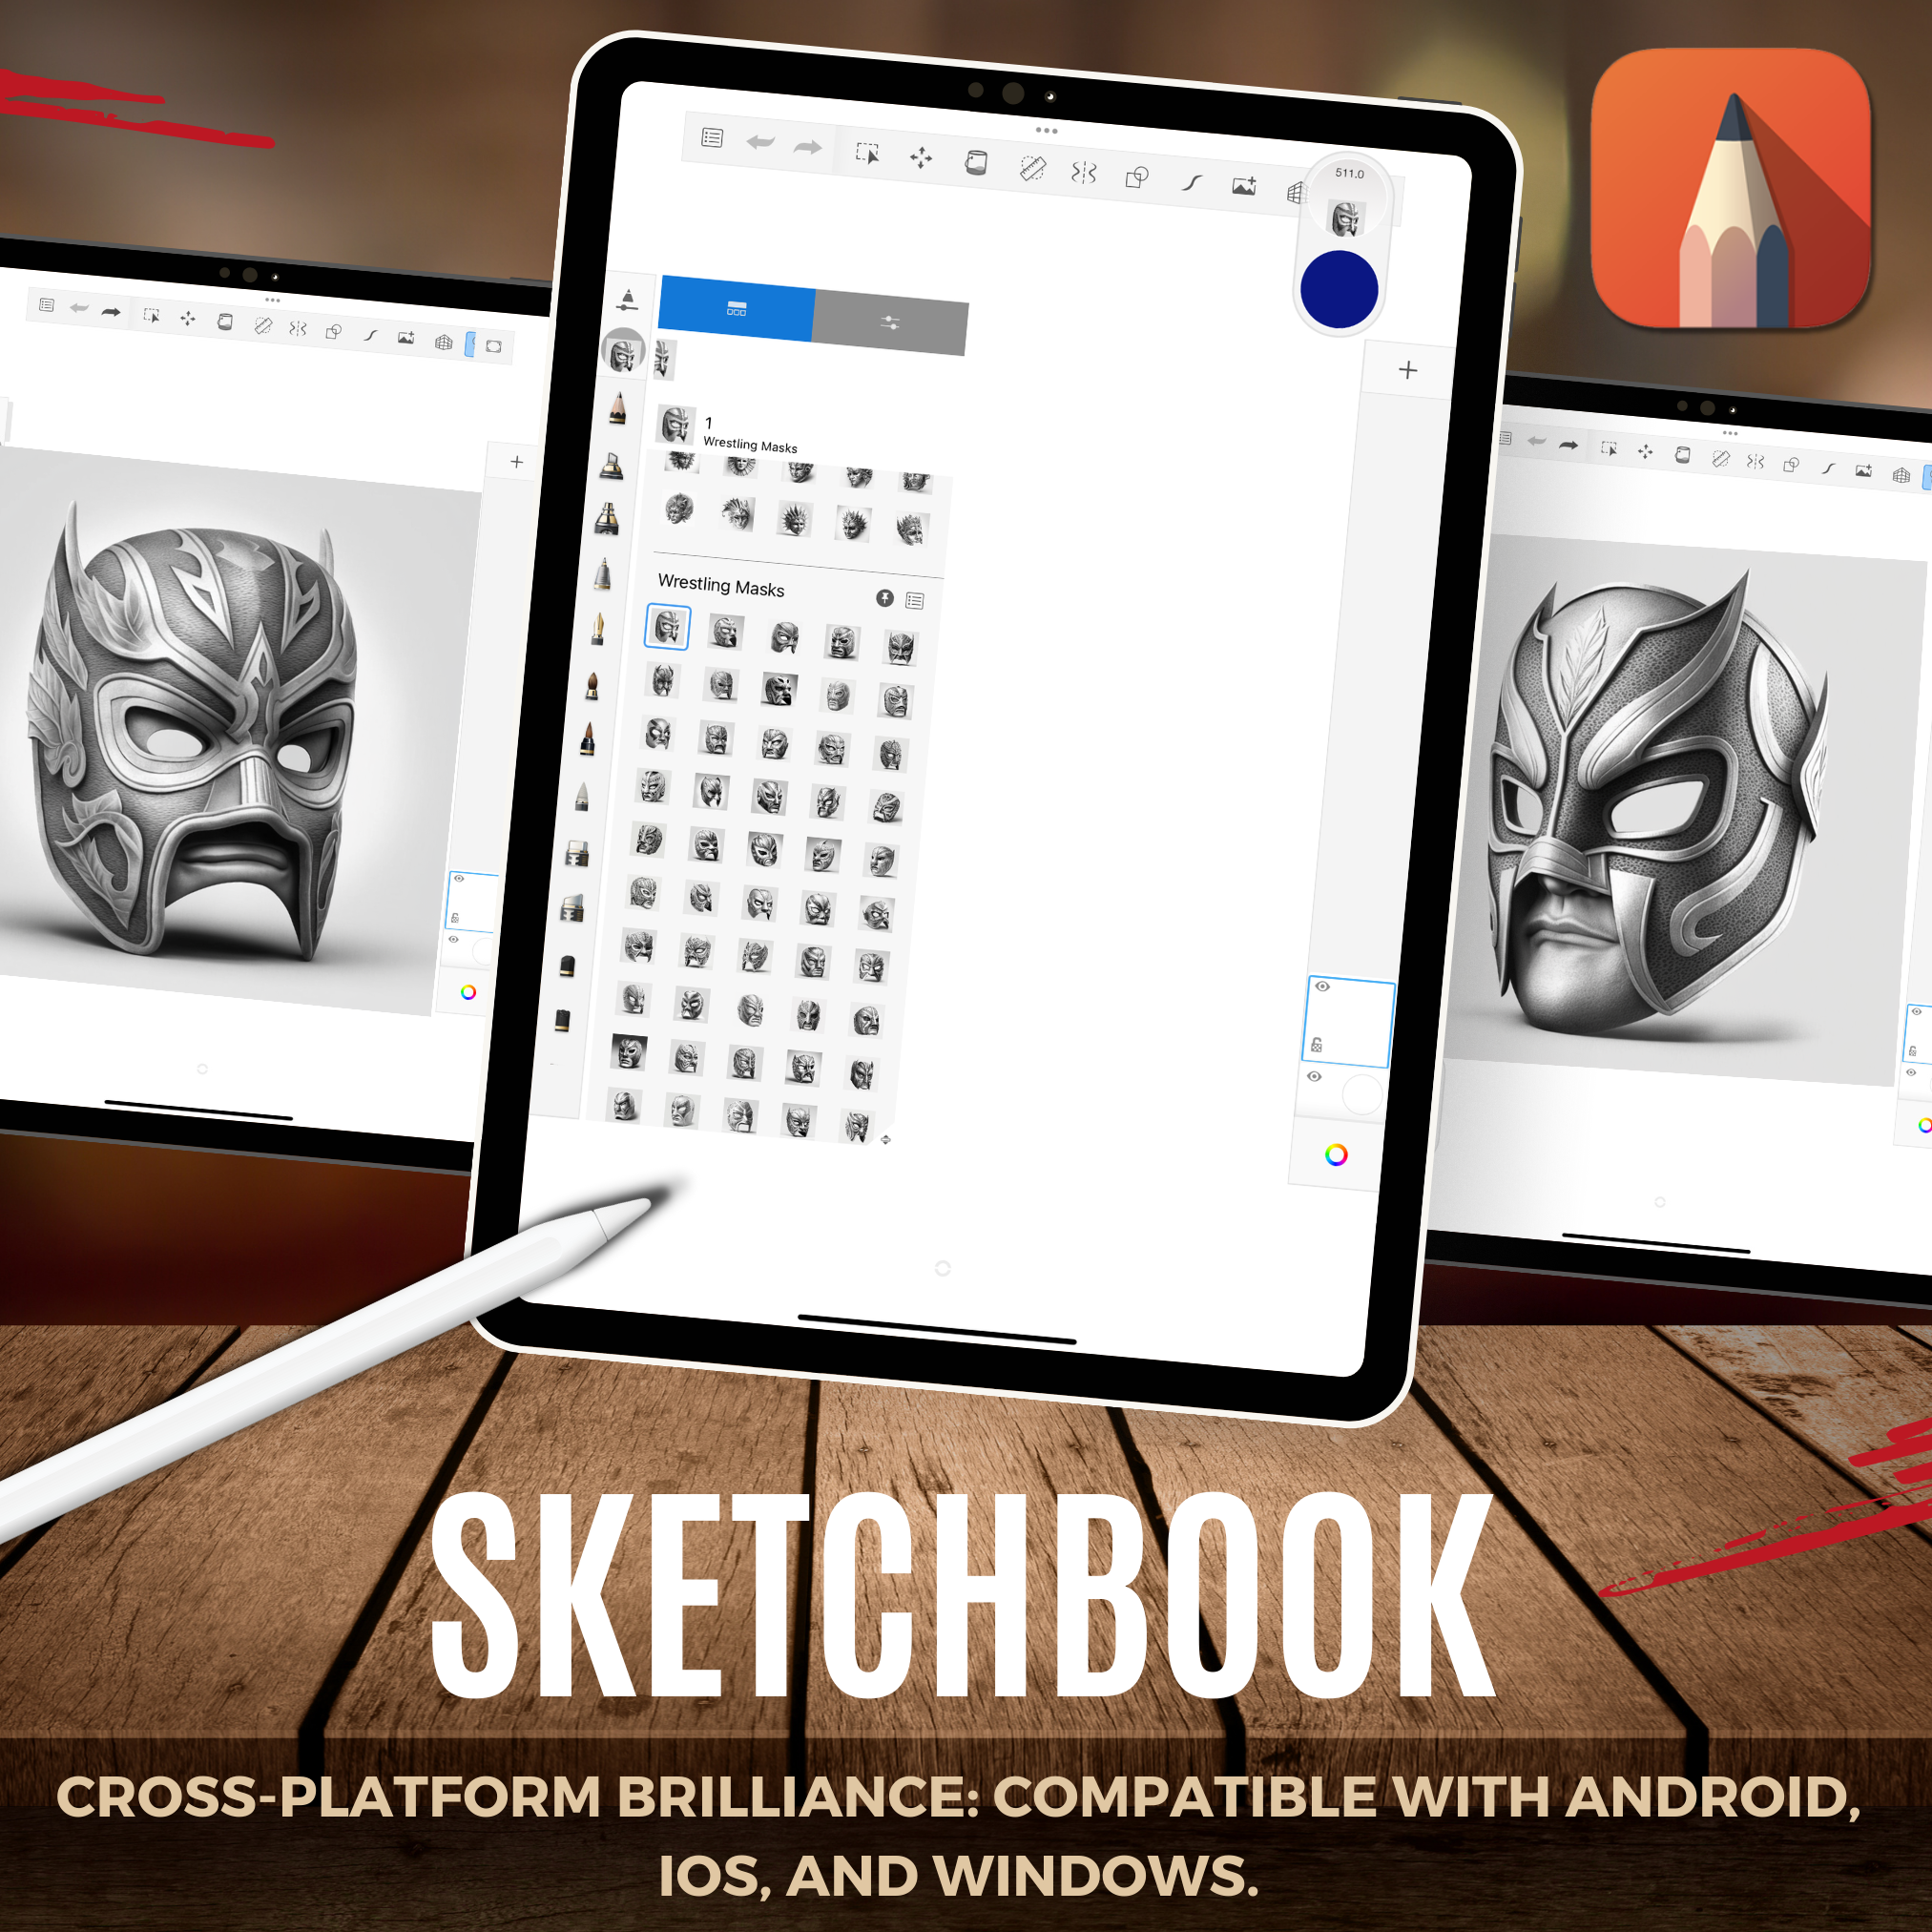 Wrestling Masks Digital Reference Design Collection: 50 Procreate & Sketchbook Images